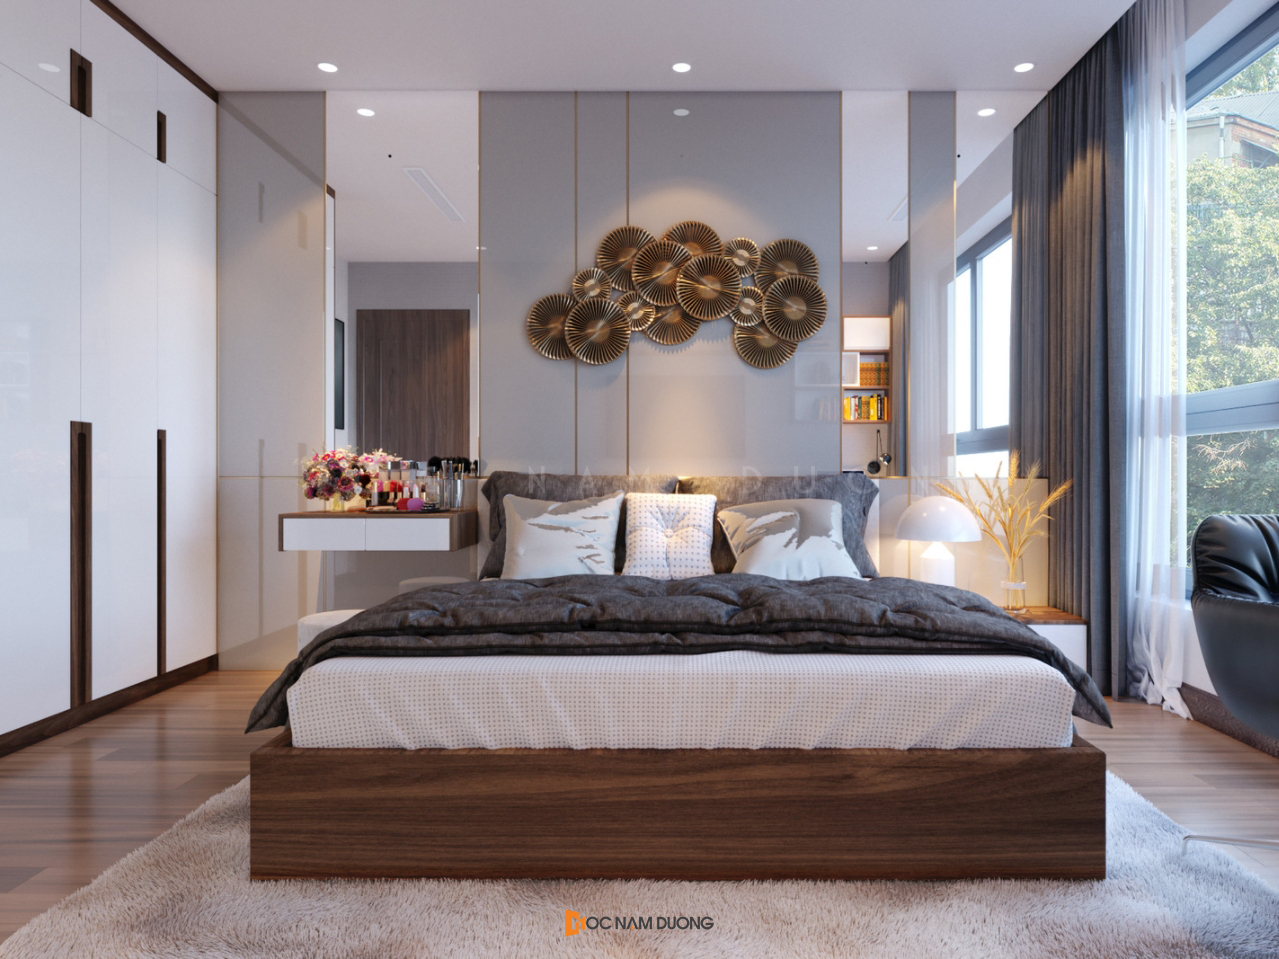 Phòng ngủ đẹp cho bố mẹ với tone màu trung tính nhẹ nhàng kết hợp ánh sáng tự nhiên thoáng đãng